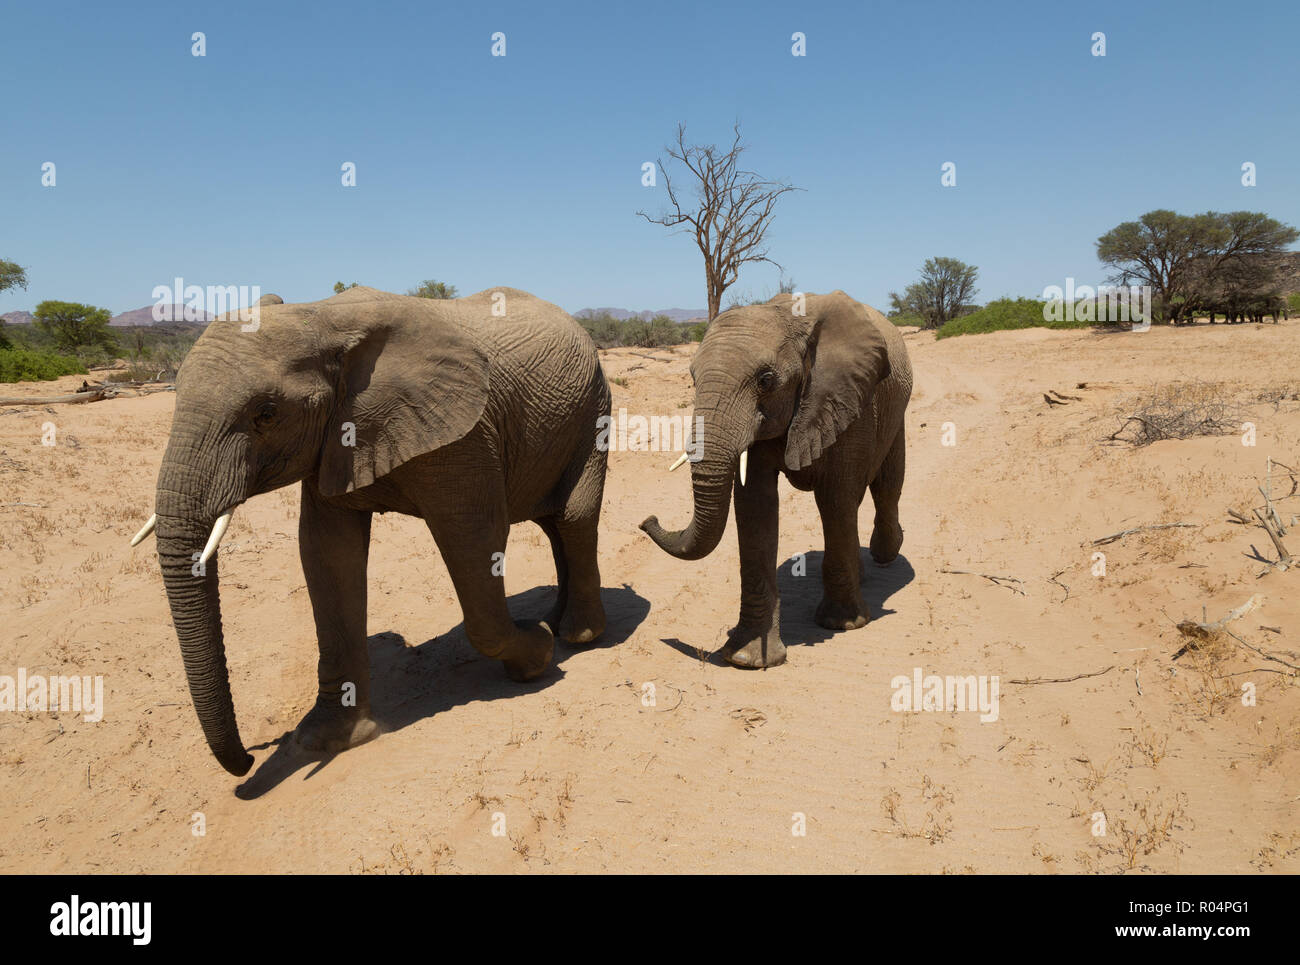 Namibie éléphant de désert, ou éléphants adaptés au désert, (Loxodonta Africana ), lit de rivière Haub, Damaraland, Namibie Afrique Banque D'Images